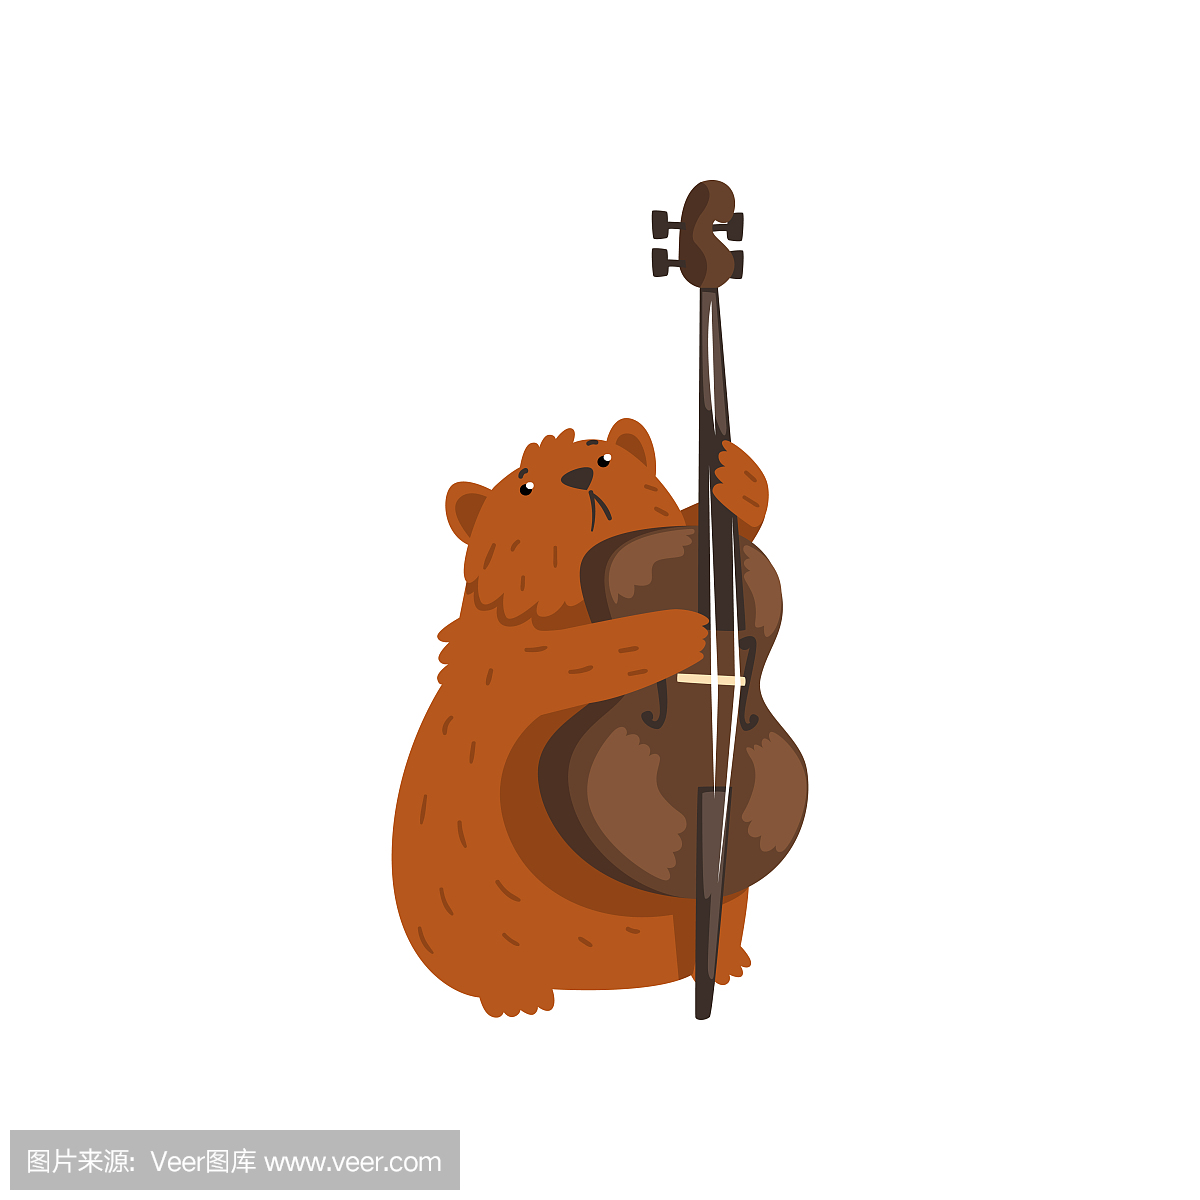 可爱的仓鼠玩大提琴,卡通动物人物与乐器矢量